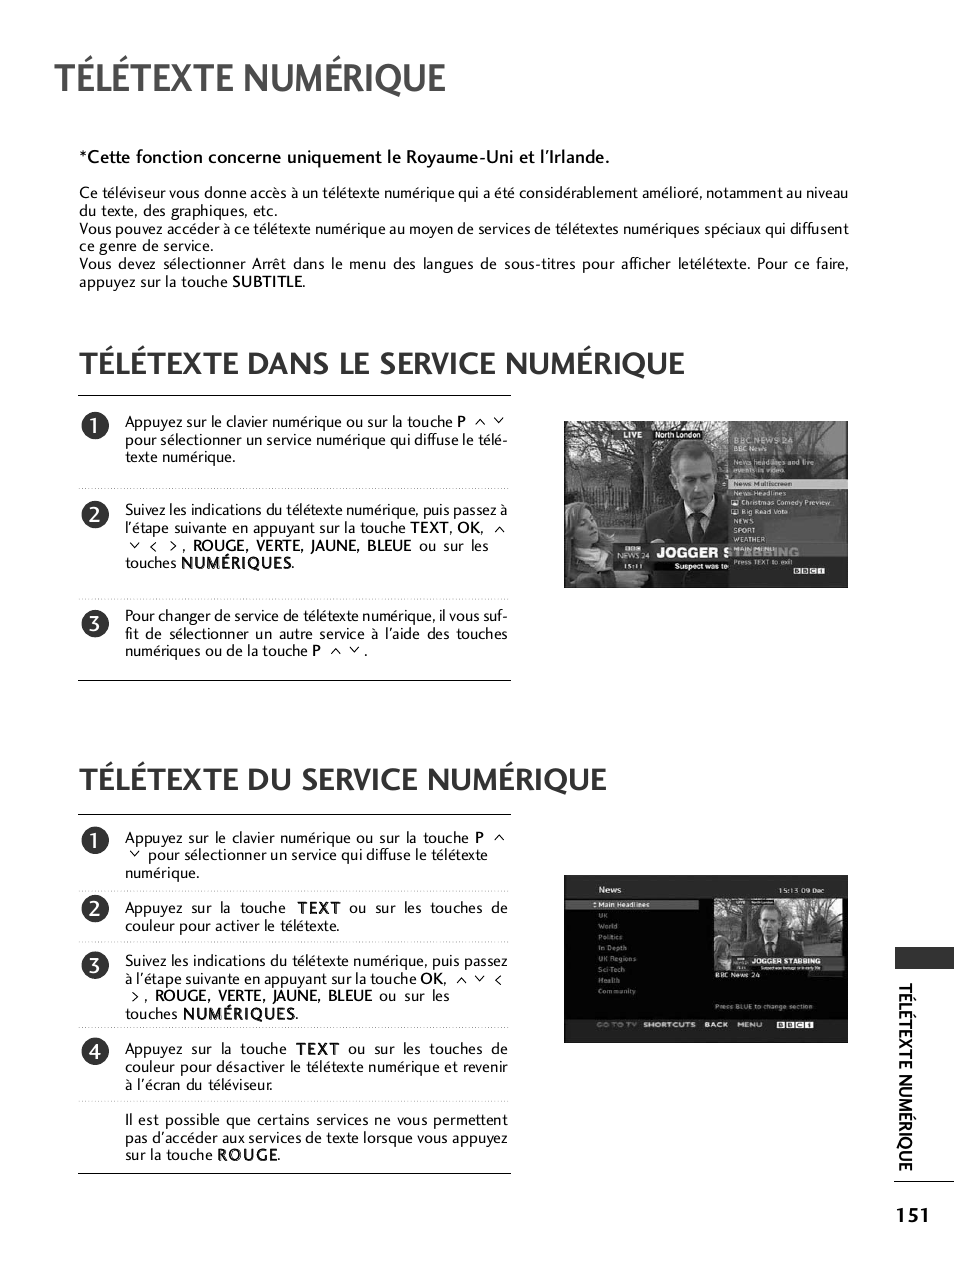 Télétexte numérique, Télétexte dans le service numérique, Télétexte du service numérique | LG 32LH40 Manuel d'utilisation | Page 153 / 180